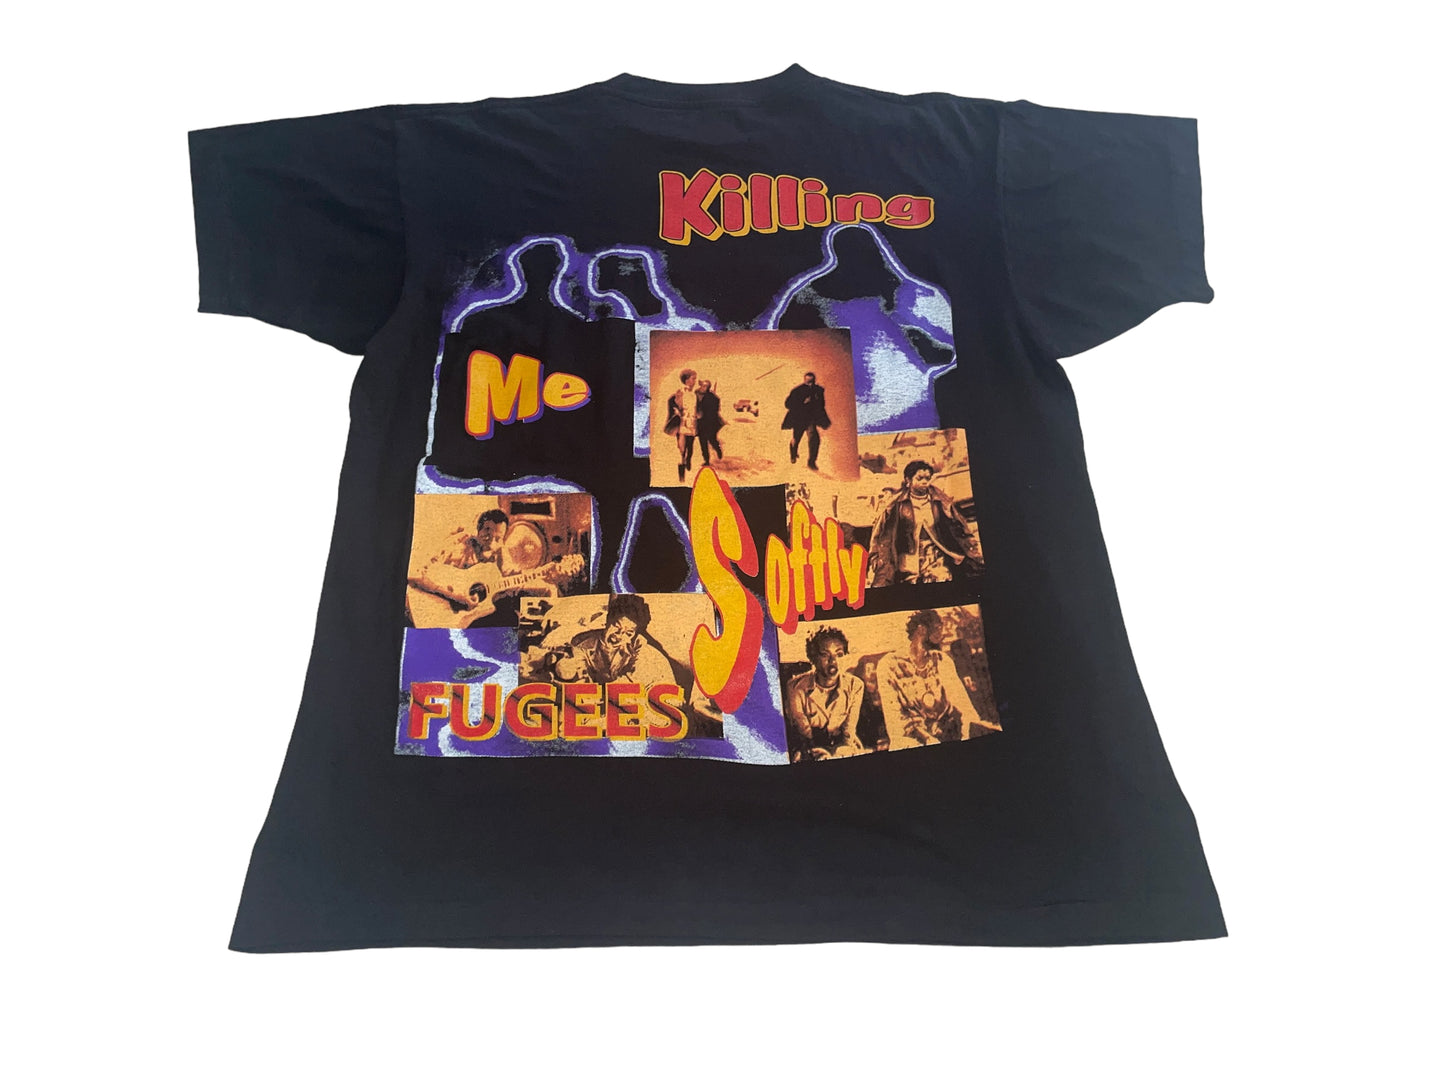 Vintage 90's Fugees T-Shirt